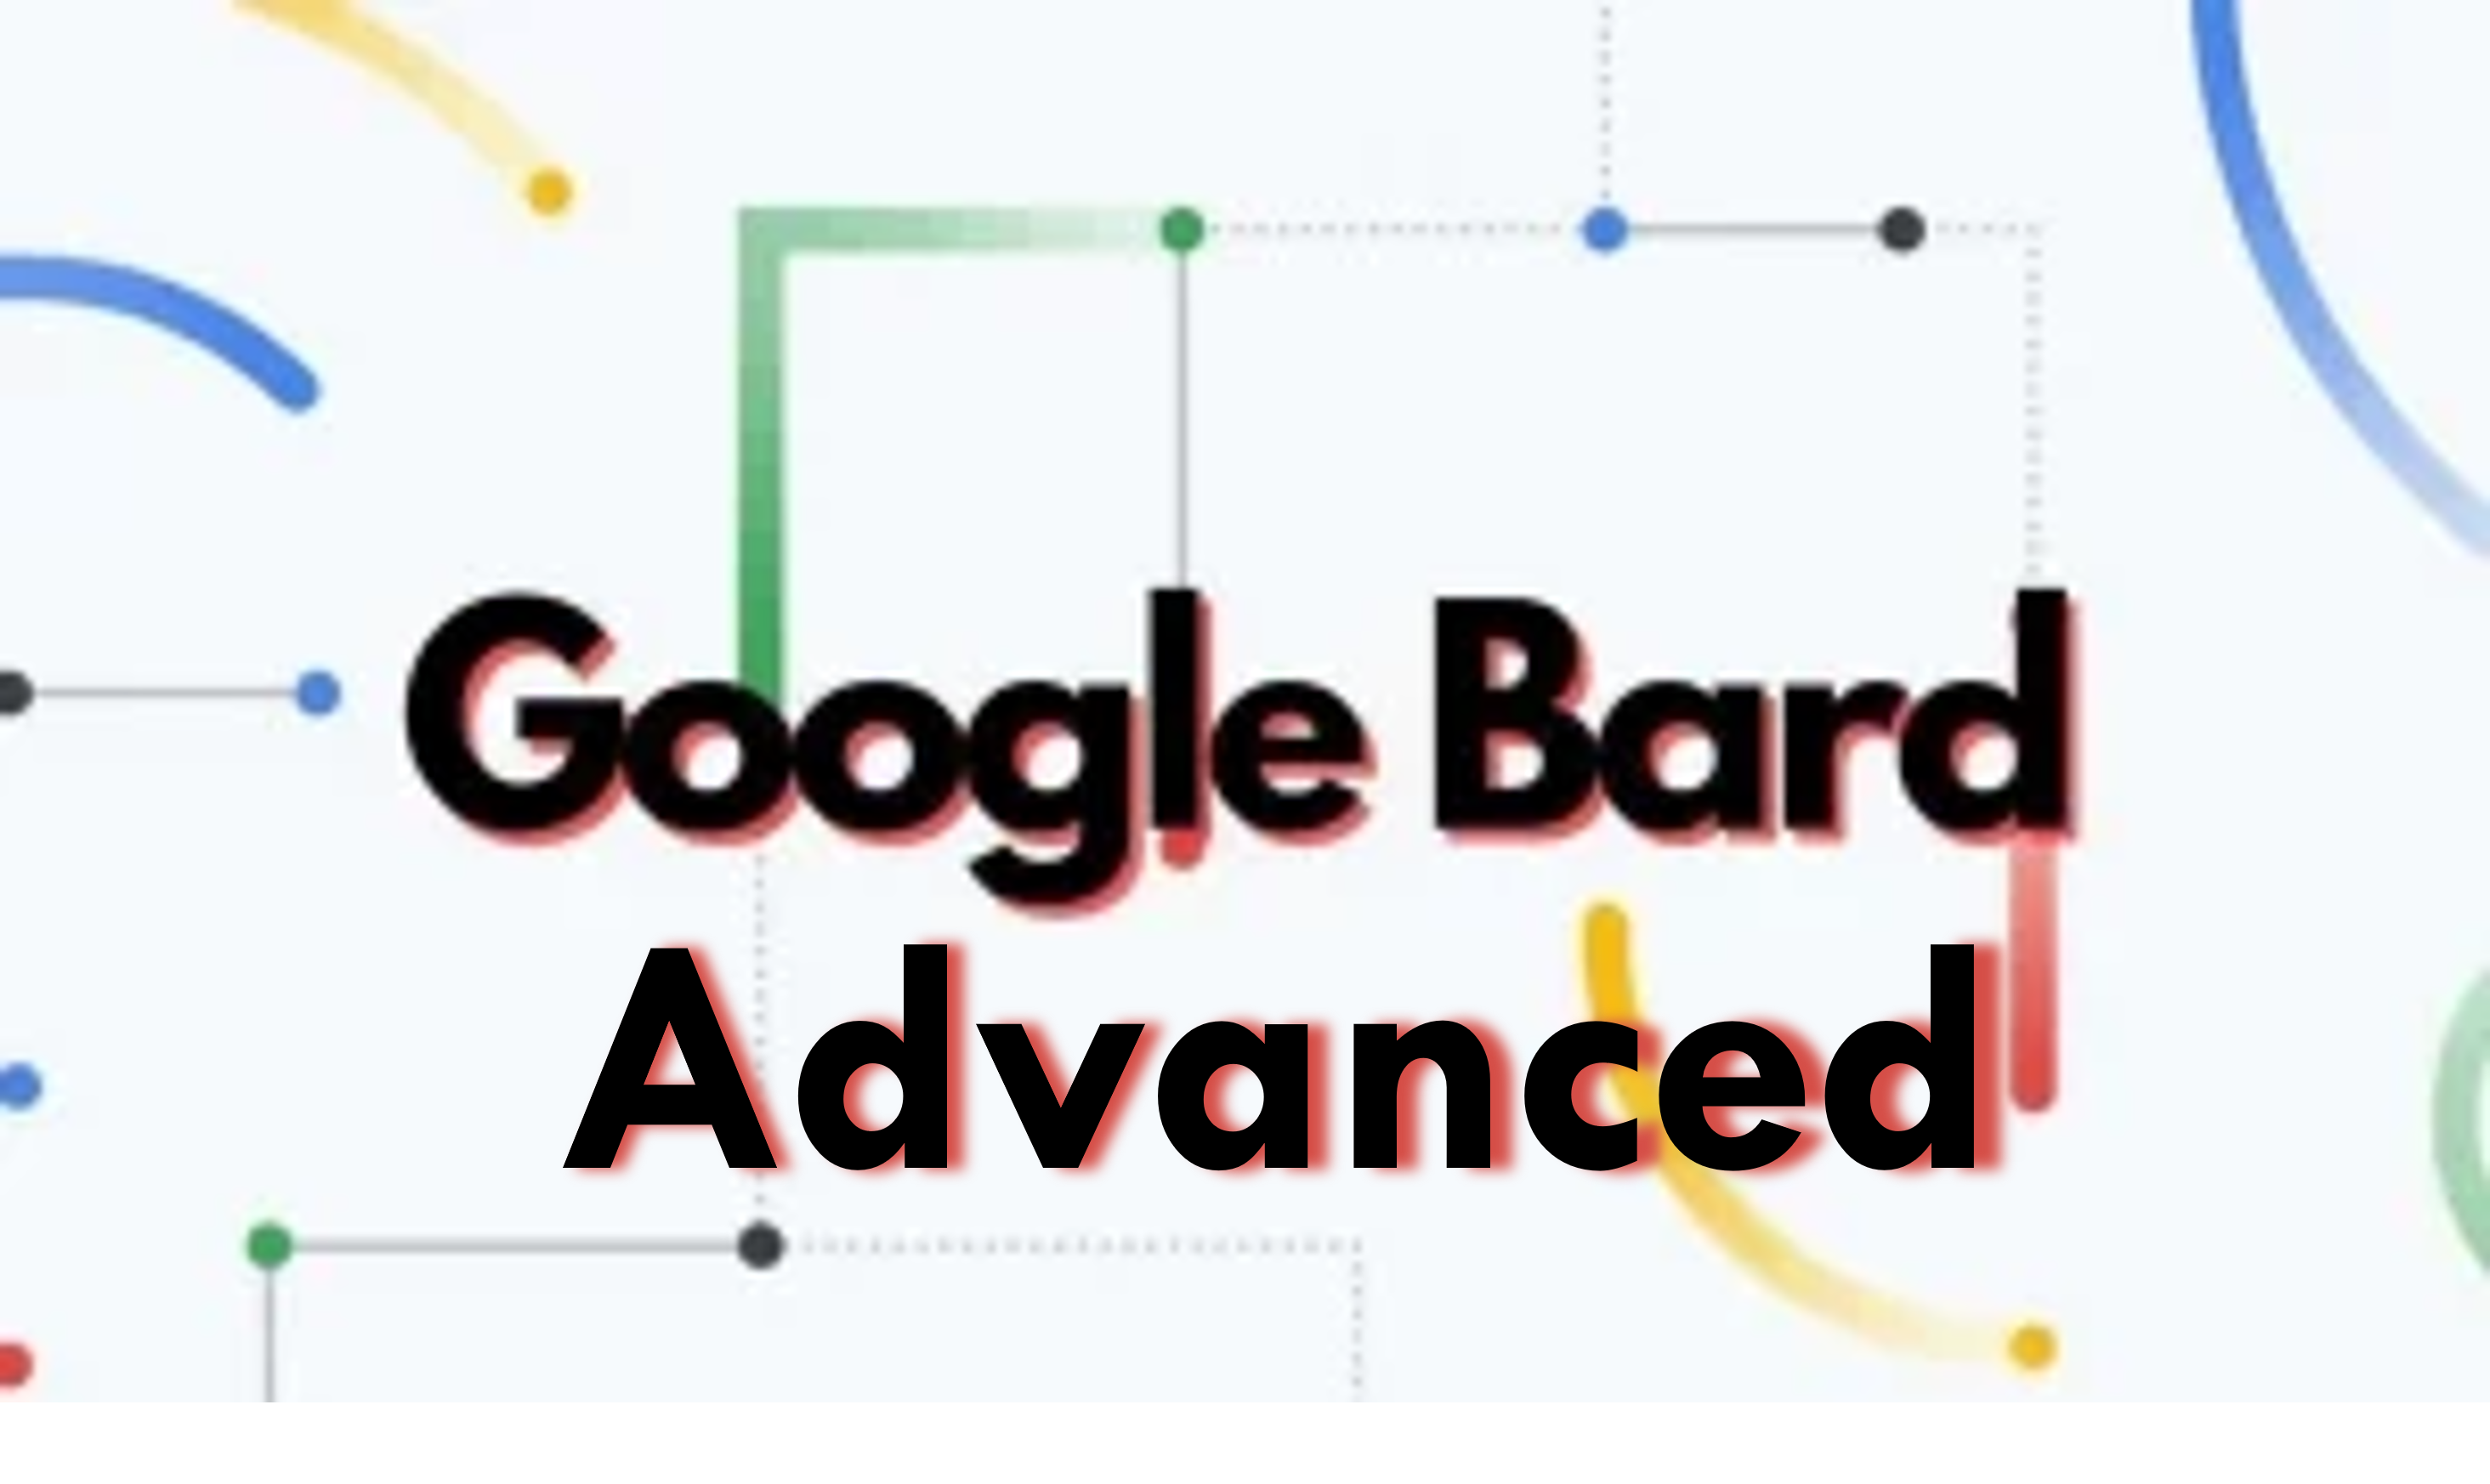 קבל ניסיון חינם למשך 3 חודשים של Google Bard Advanced; חווה את העתיד של AI Chatbots